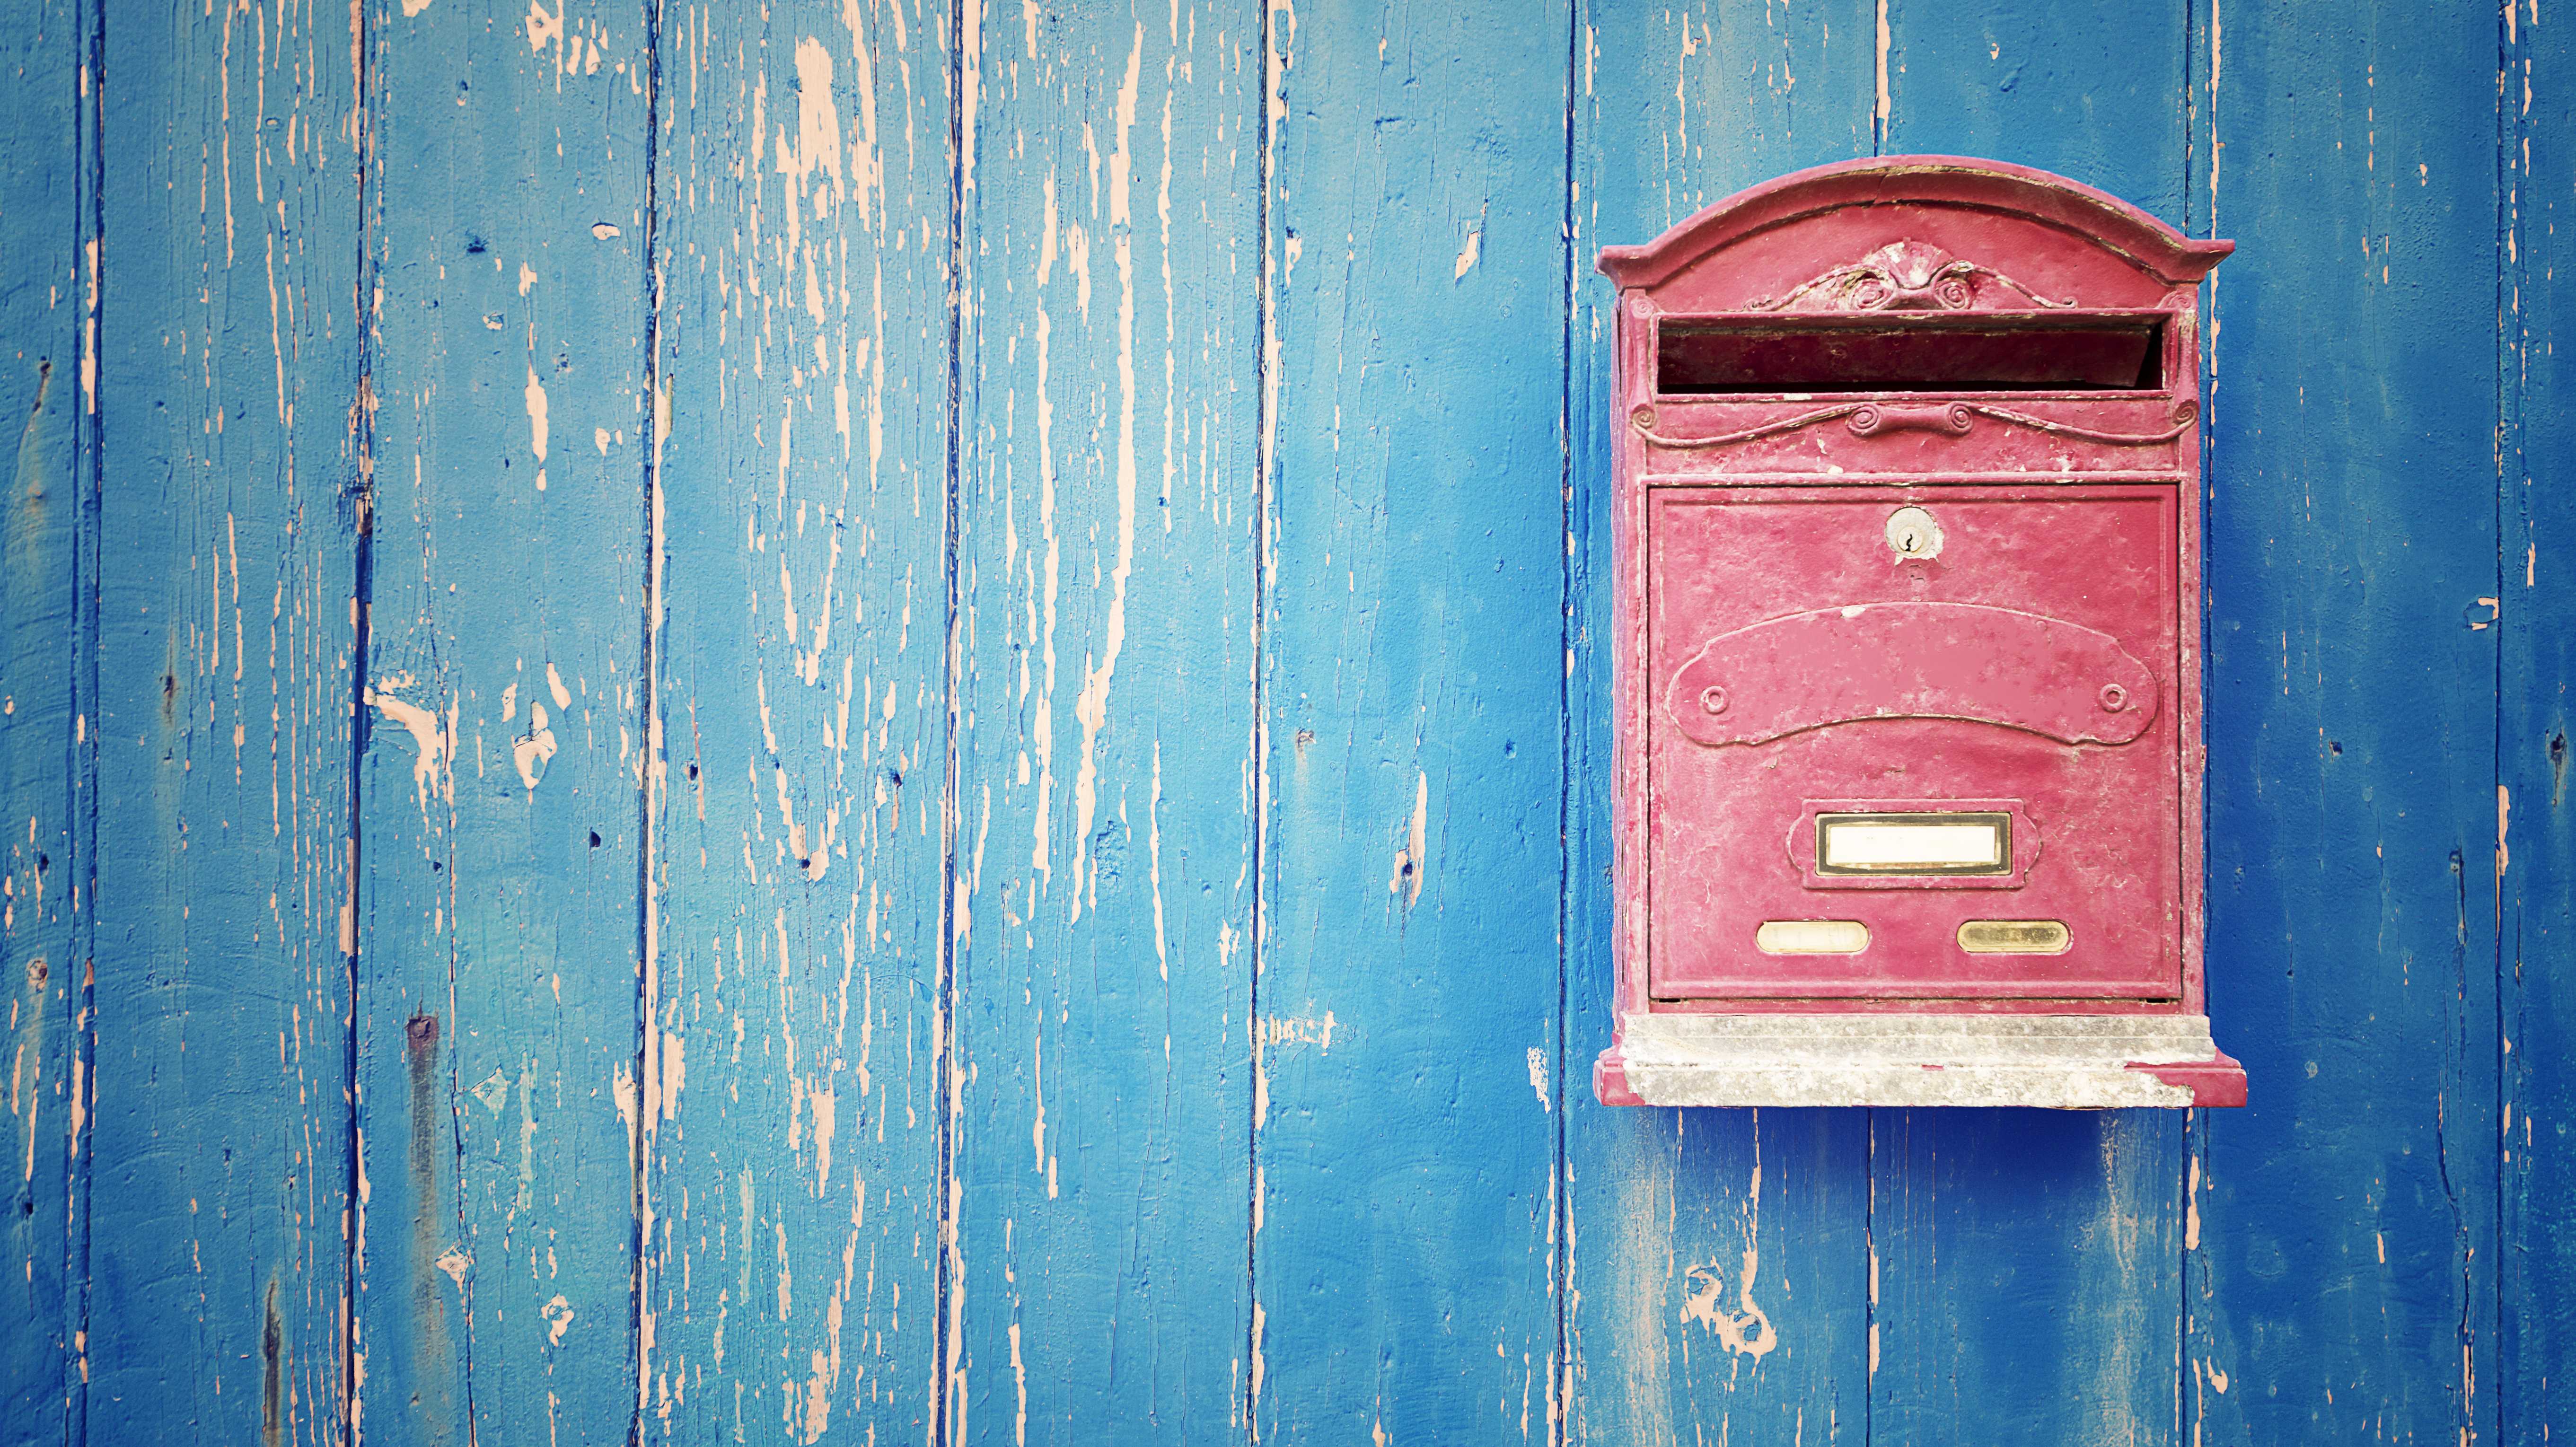 Ein roter Briefkasten an einer blauen Holzwand.